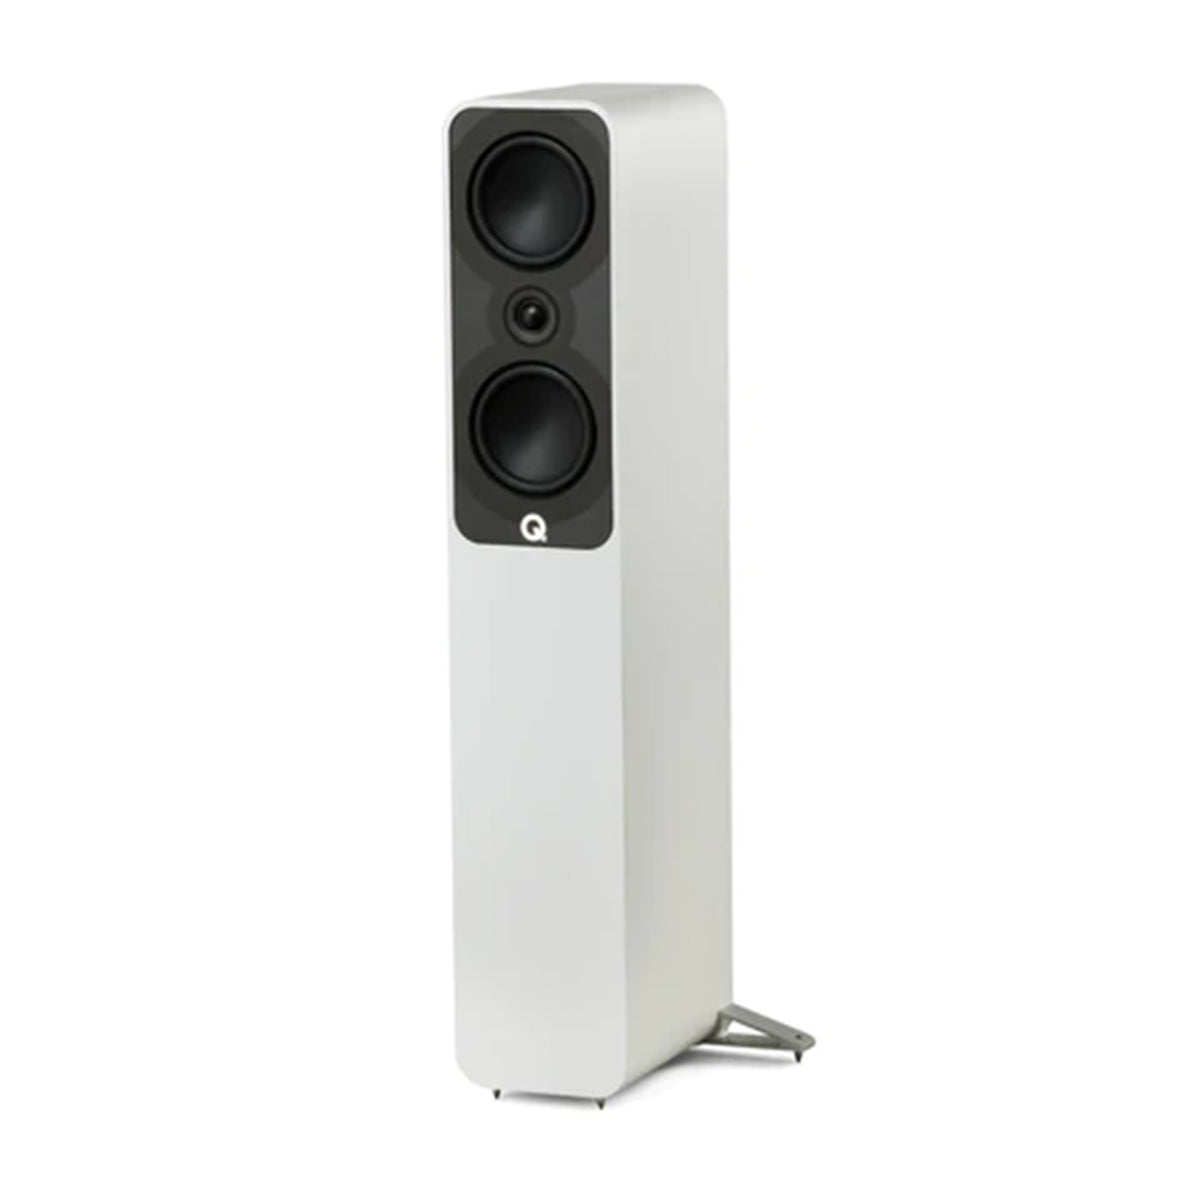 Q Acoustics 5040 Floorstanding Speaker Satin White (Single Speaker) - 2 x 5  Mid/Bass Drivers, 1 Tweeter - Stereo System for Home Entertainment